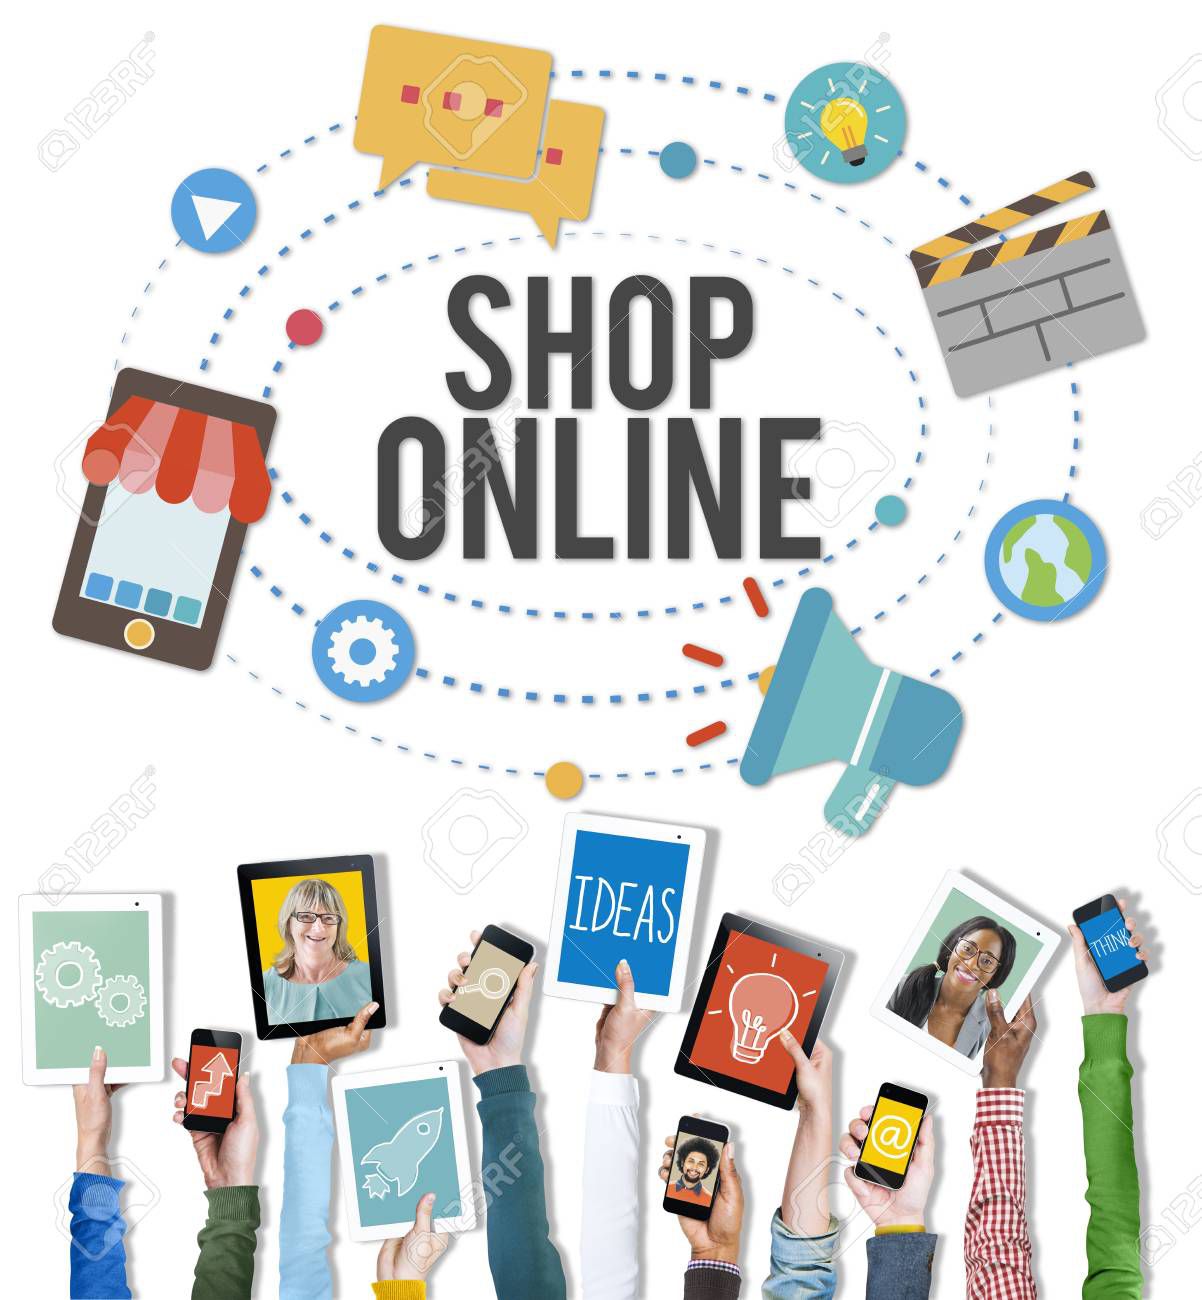 Quy định mới về bán hàng online các chủ shop cần chú ý